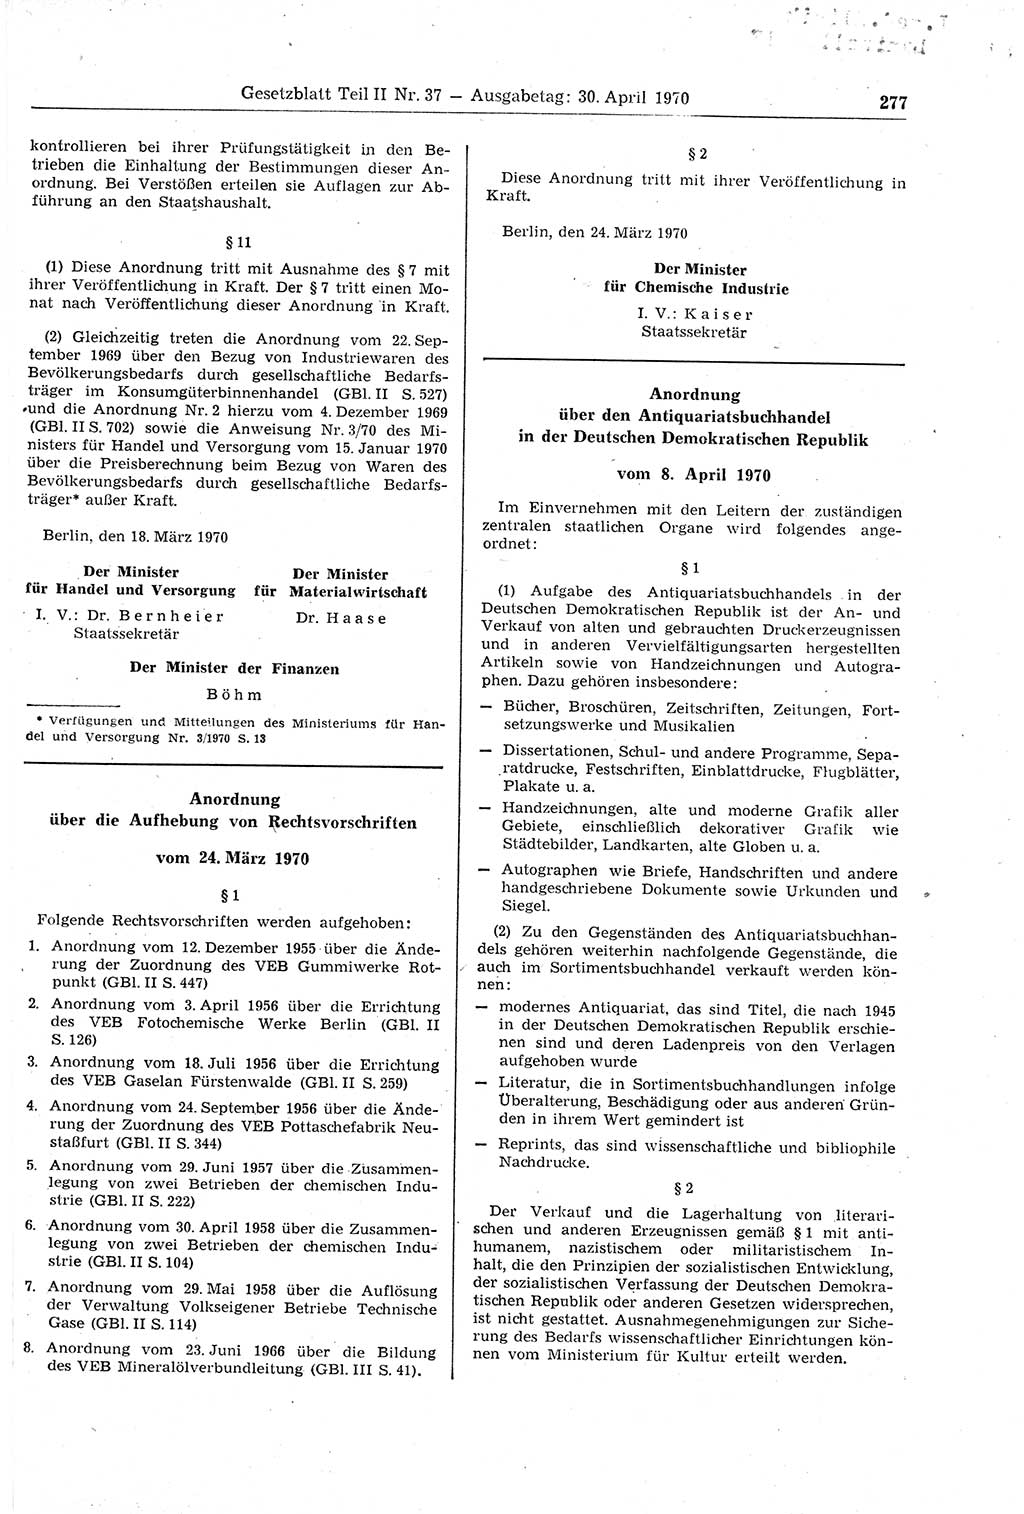 Gesetzblatt (GBl.) der Deutschen Demokratischen Republik (DDR) Teil ⅠⅠ 1970, Seite 277 (GBl. DDR ⅠⅠ 1970, S. 277)